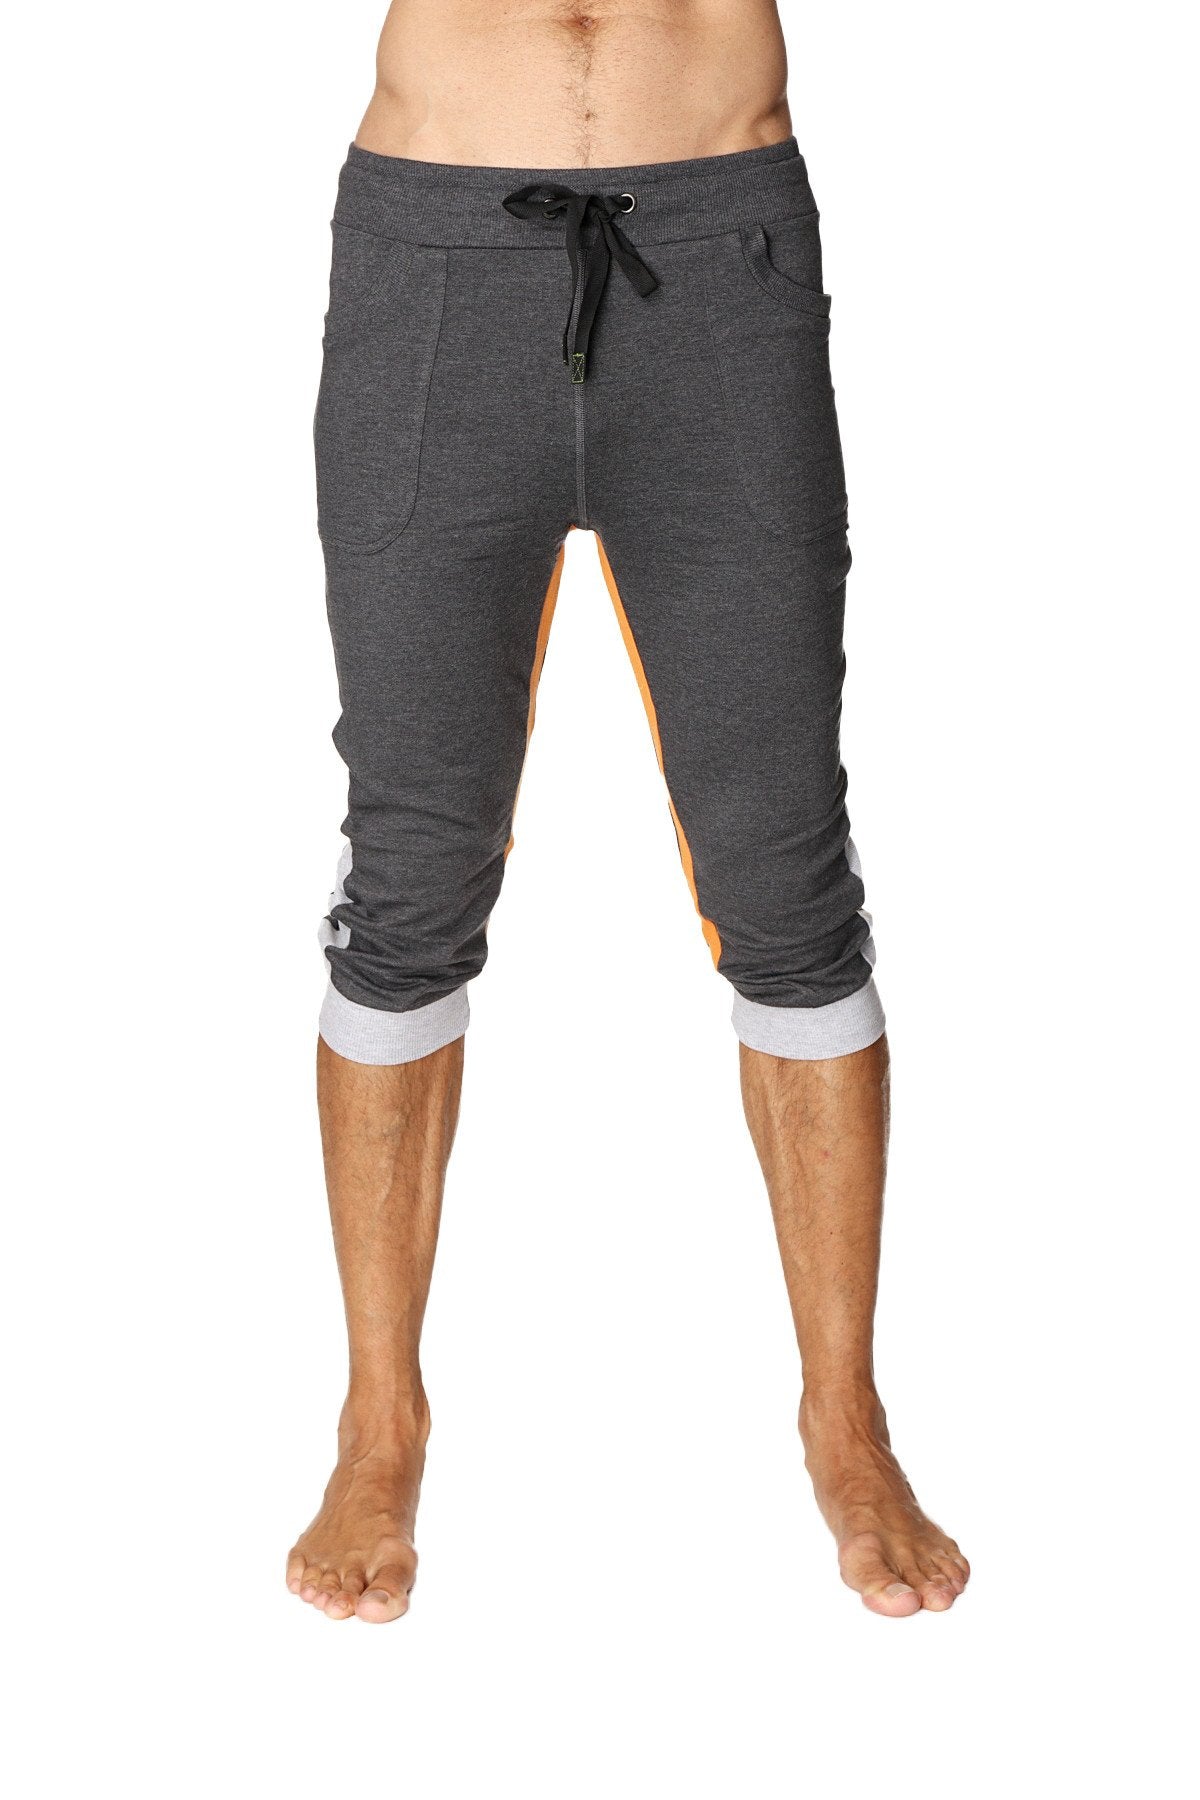 Ultra-Flex Tri-color Cuffed Yoga Pant (Charcoal w/Grey & Orange)